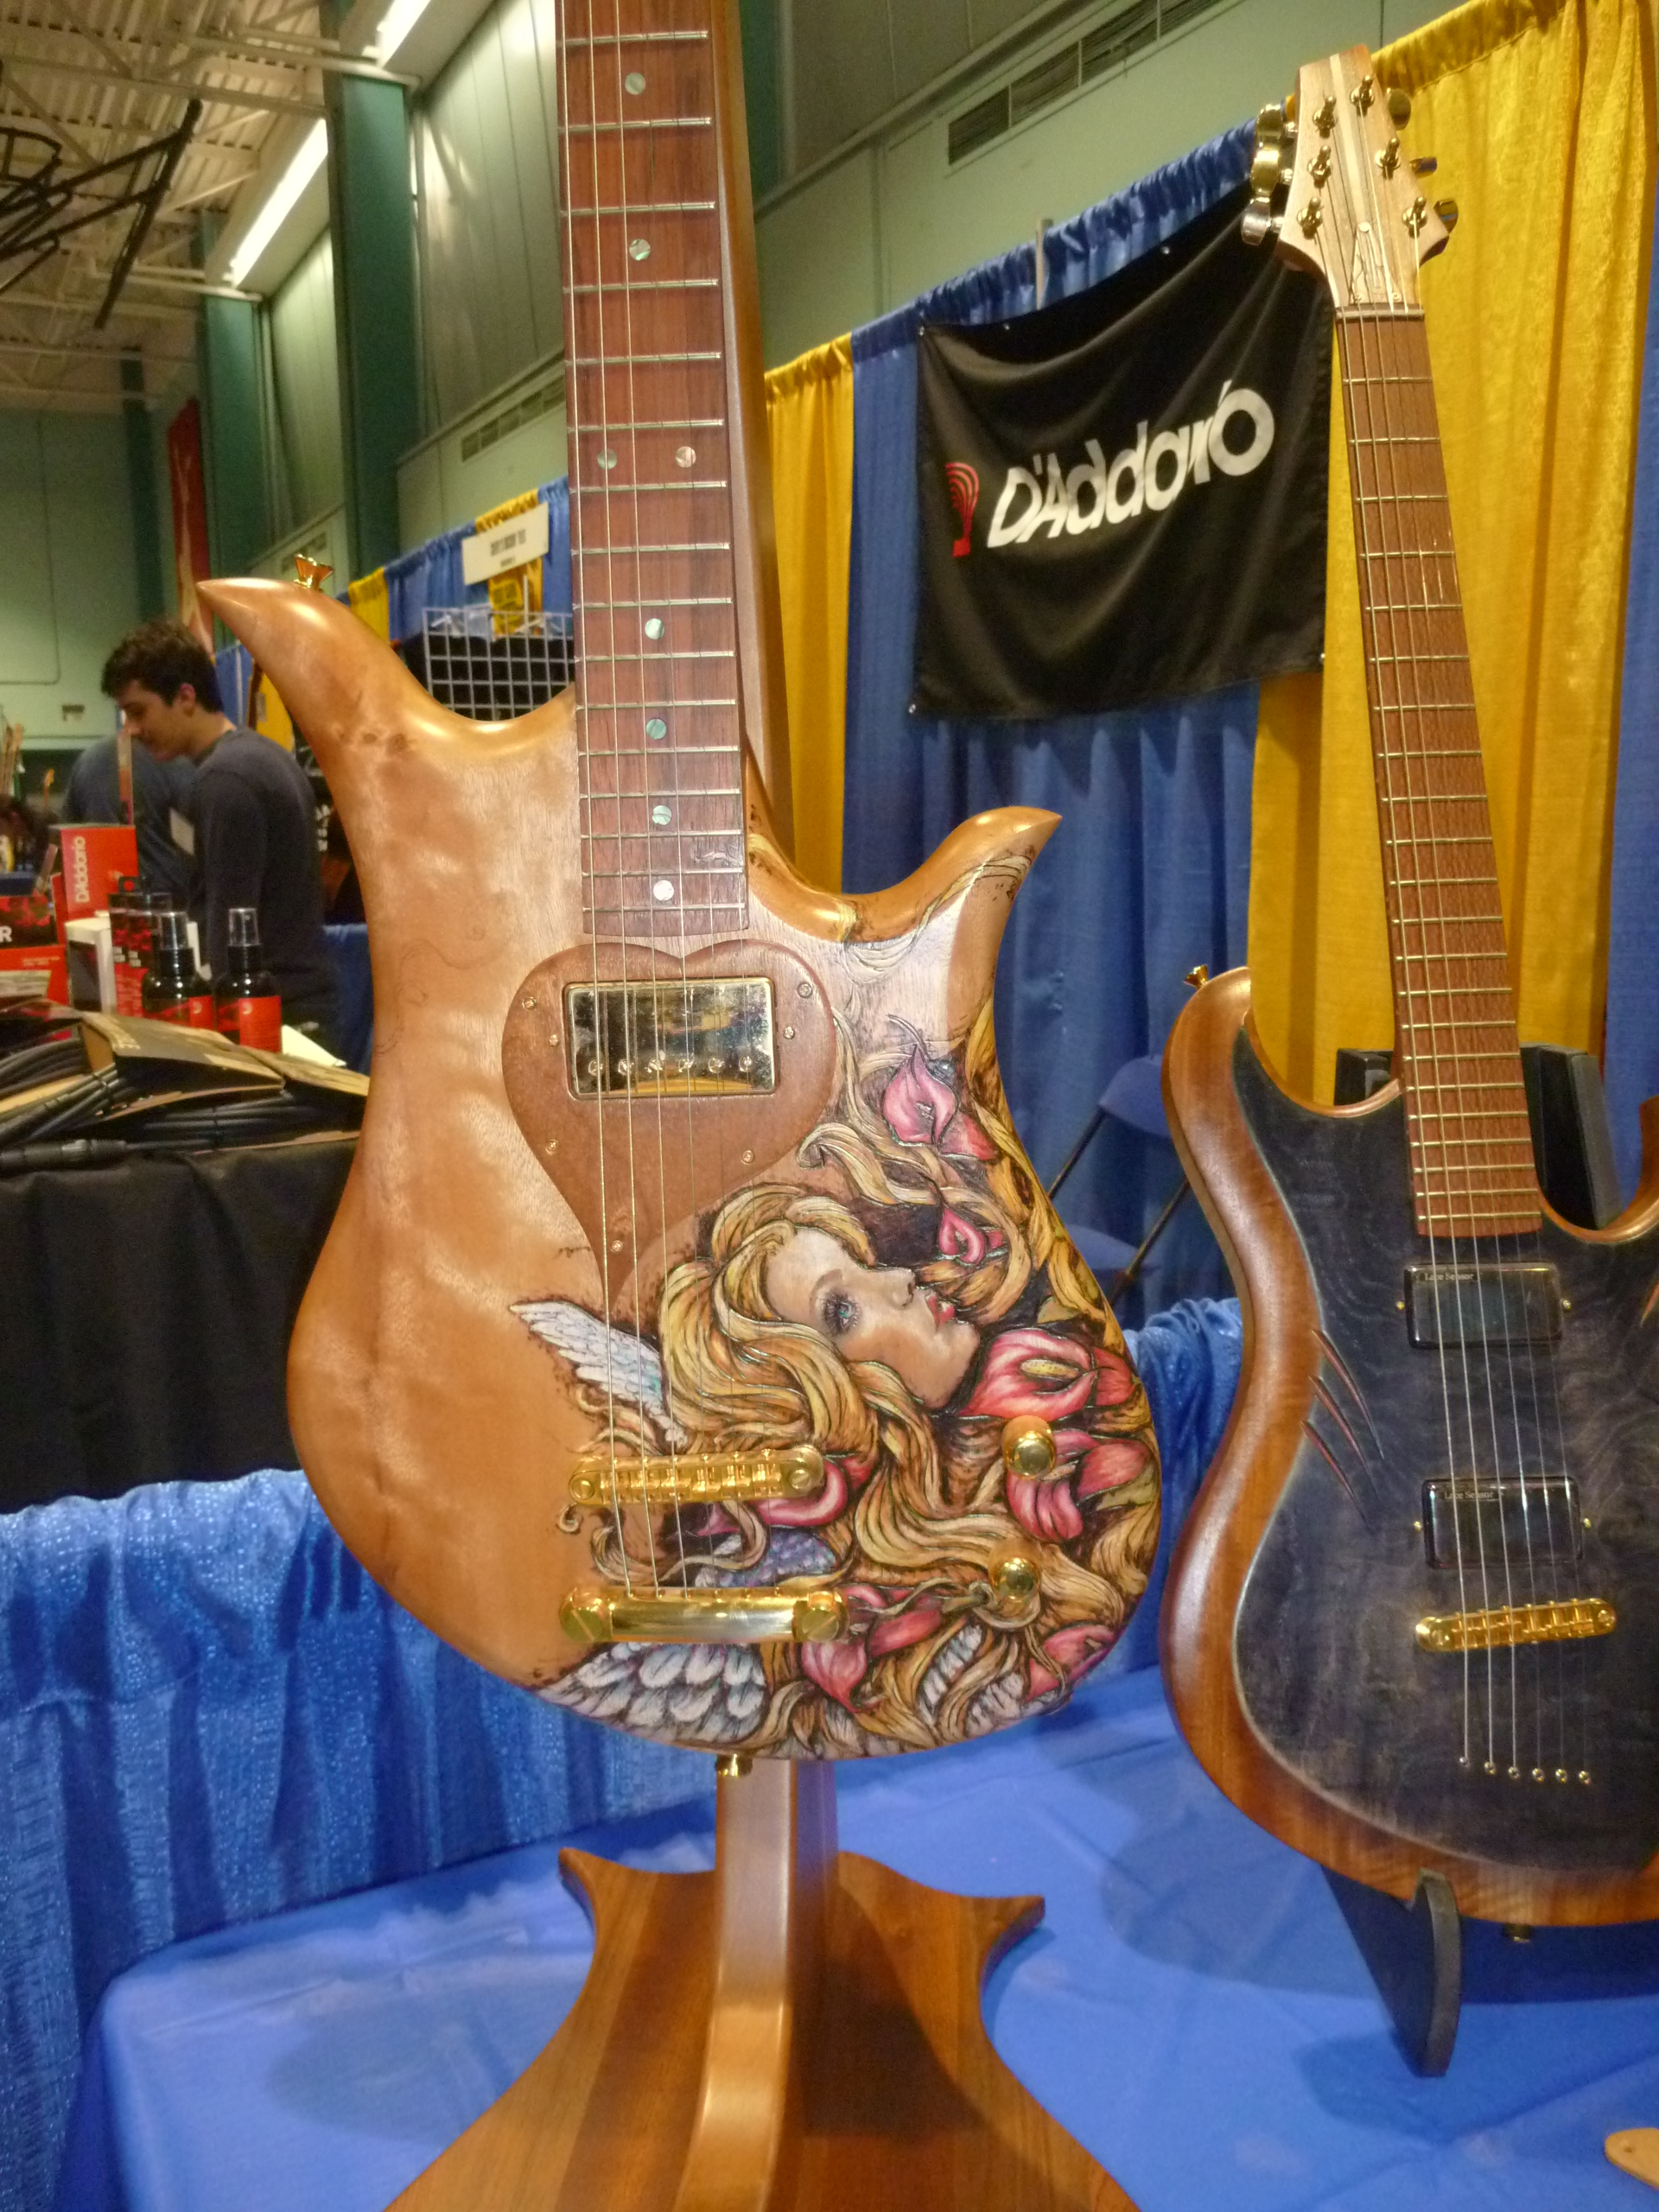 Beautiful work indeed by Paul Girouard of Girouard Guitars.